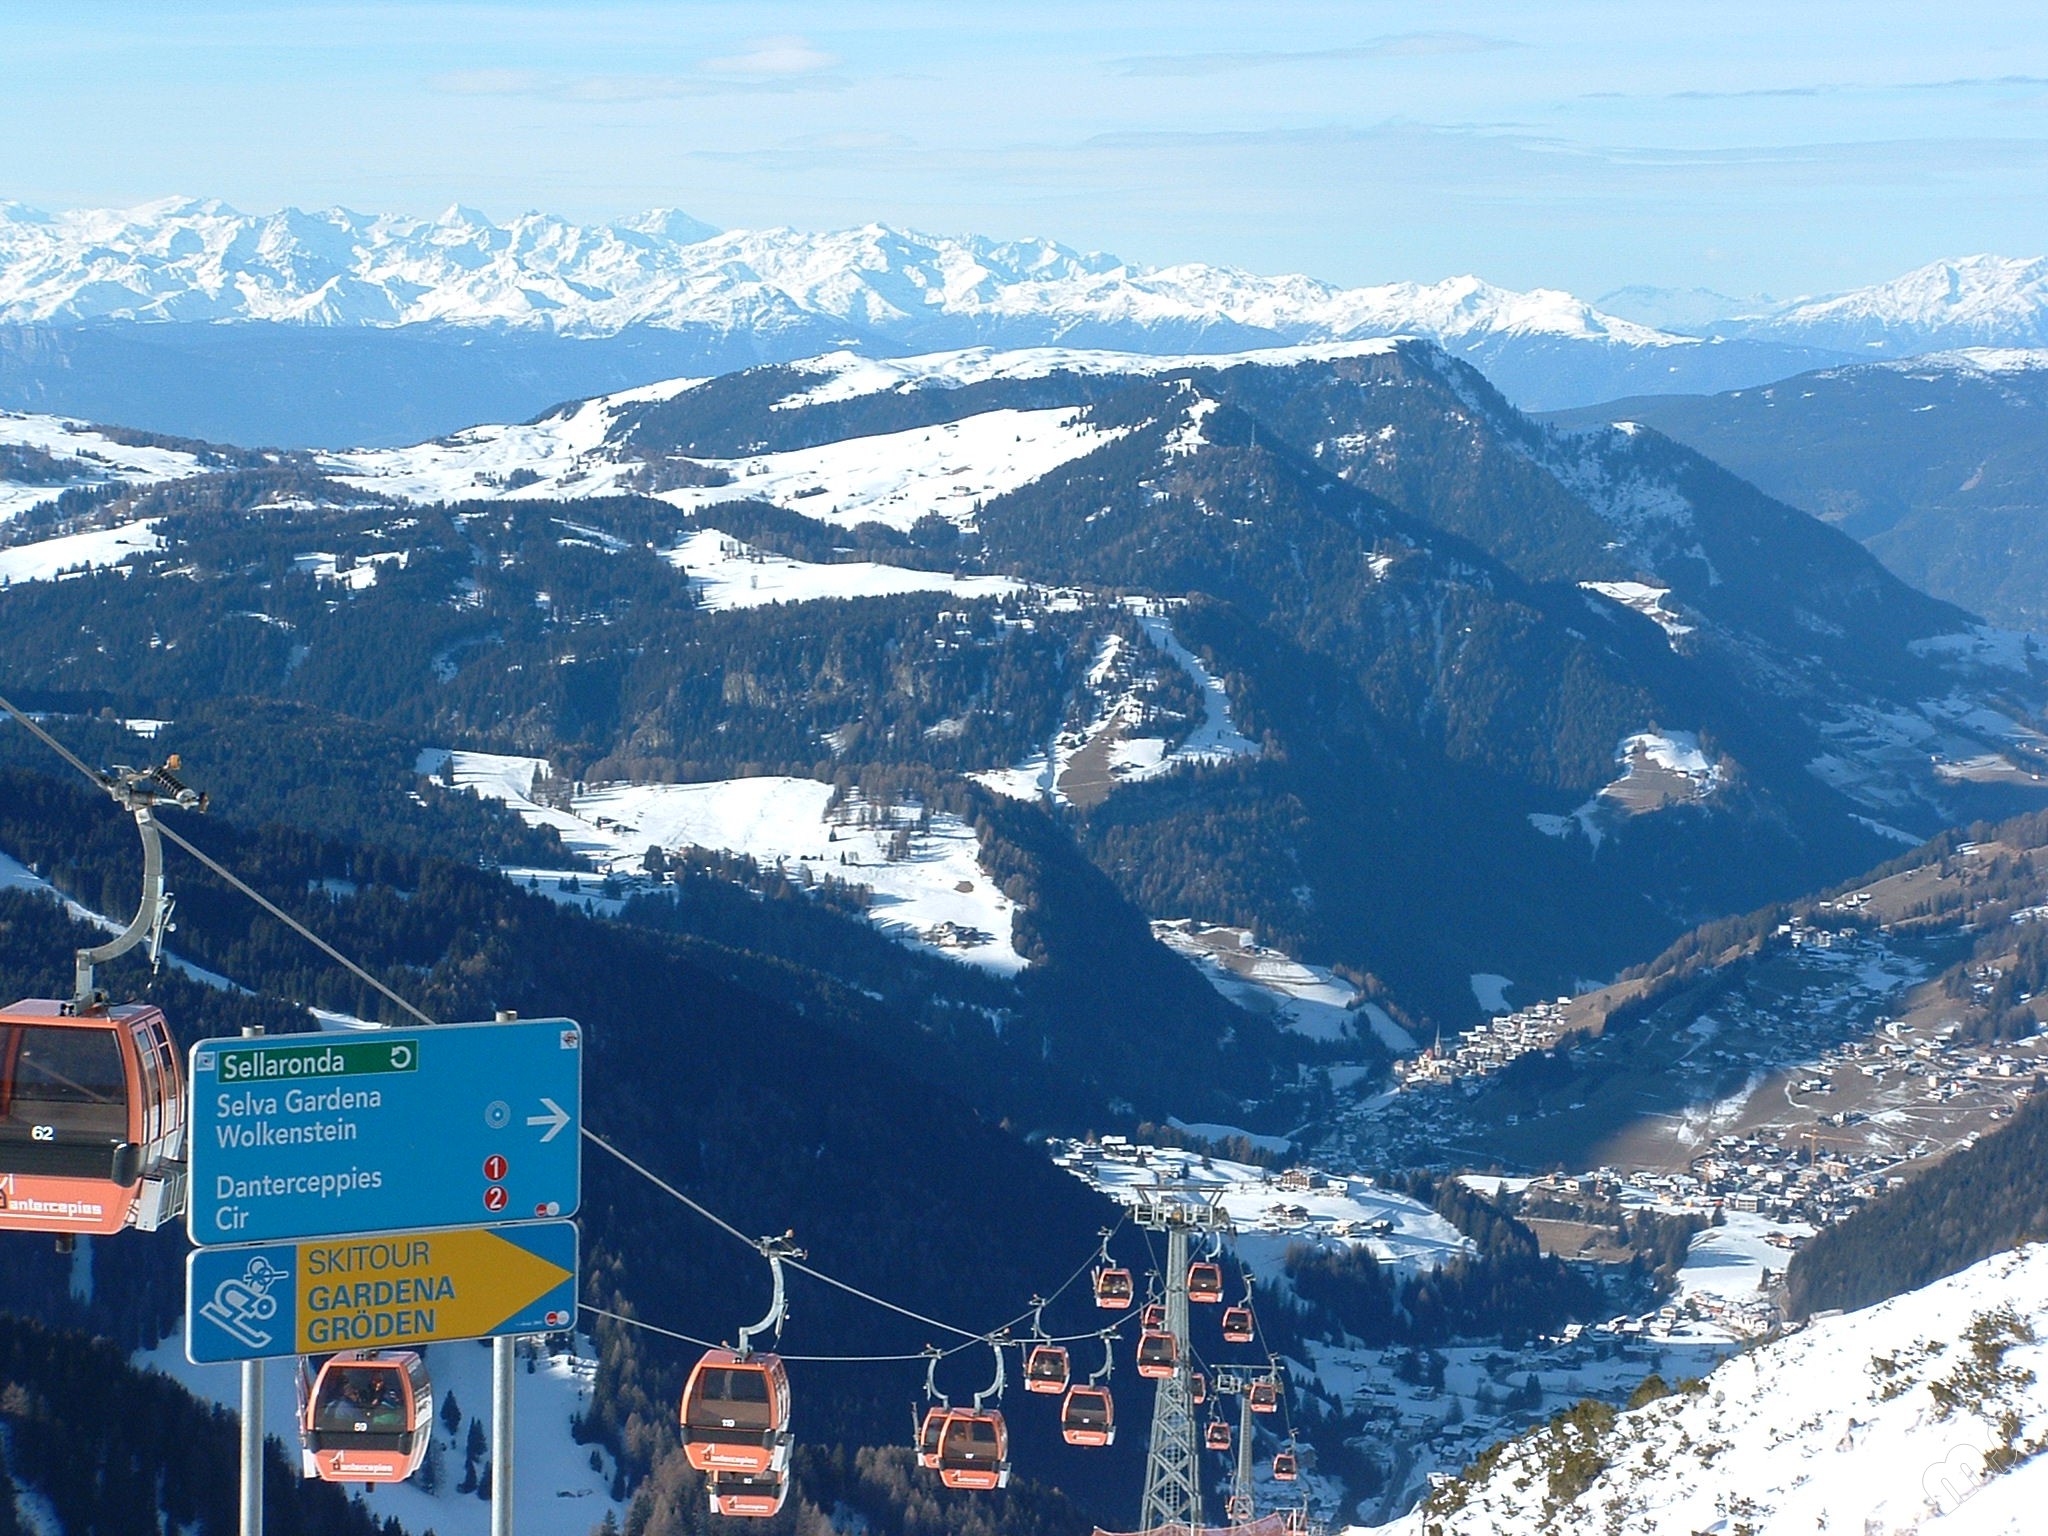 Ein Schild mit der Aufschrift "Sellarunde" vor dem Panorama eines Skigebiets